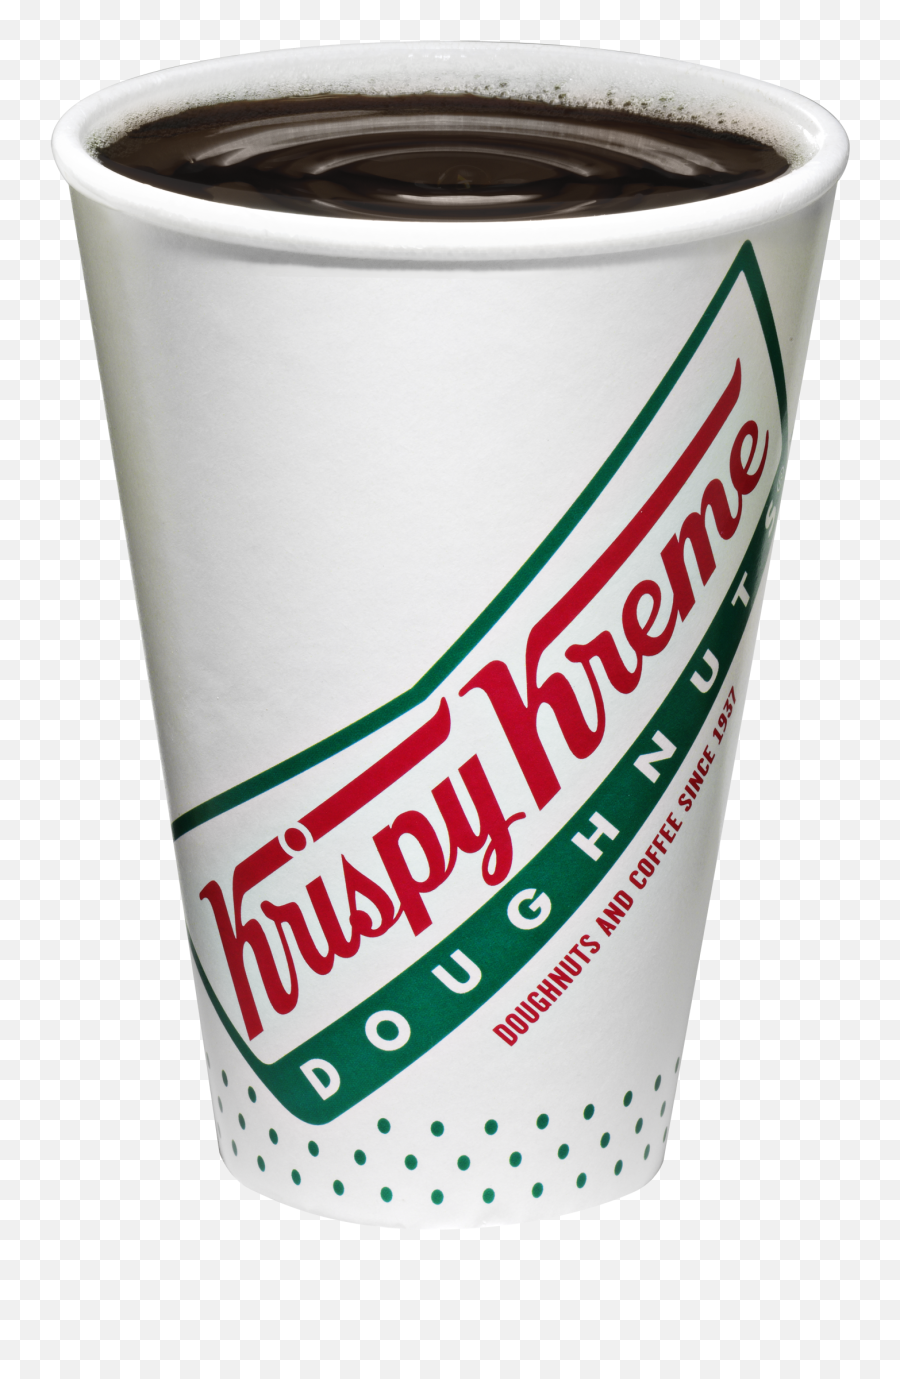 Krispy Kreme Coffee Cup - Krispy Kreme And Coffee Clipart Krispy Kreme Coffee Cup Png,Starbucks Coffee Cup Png